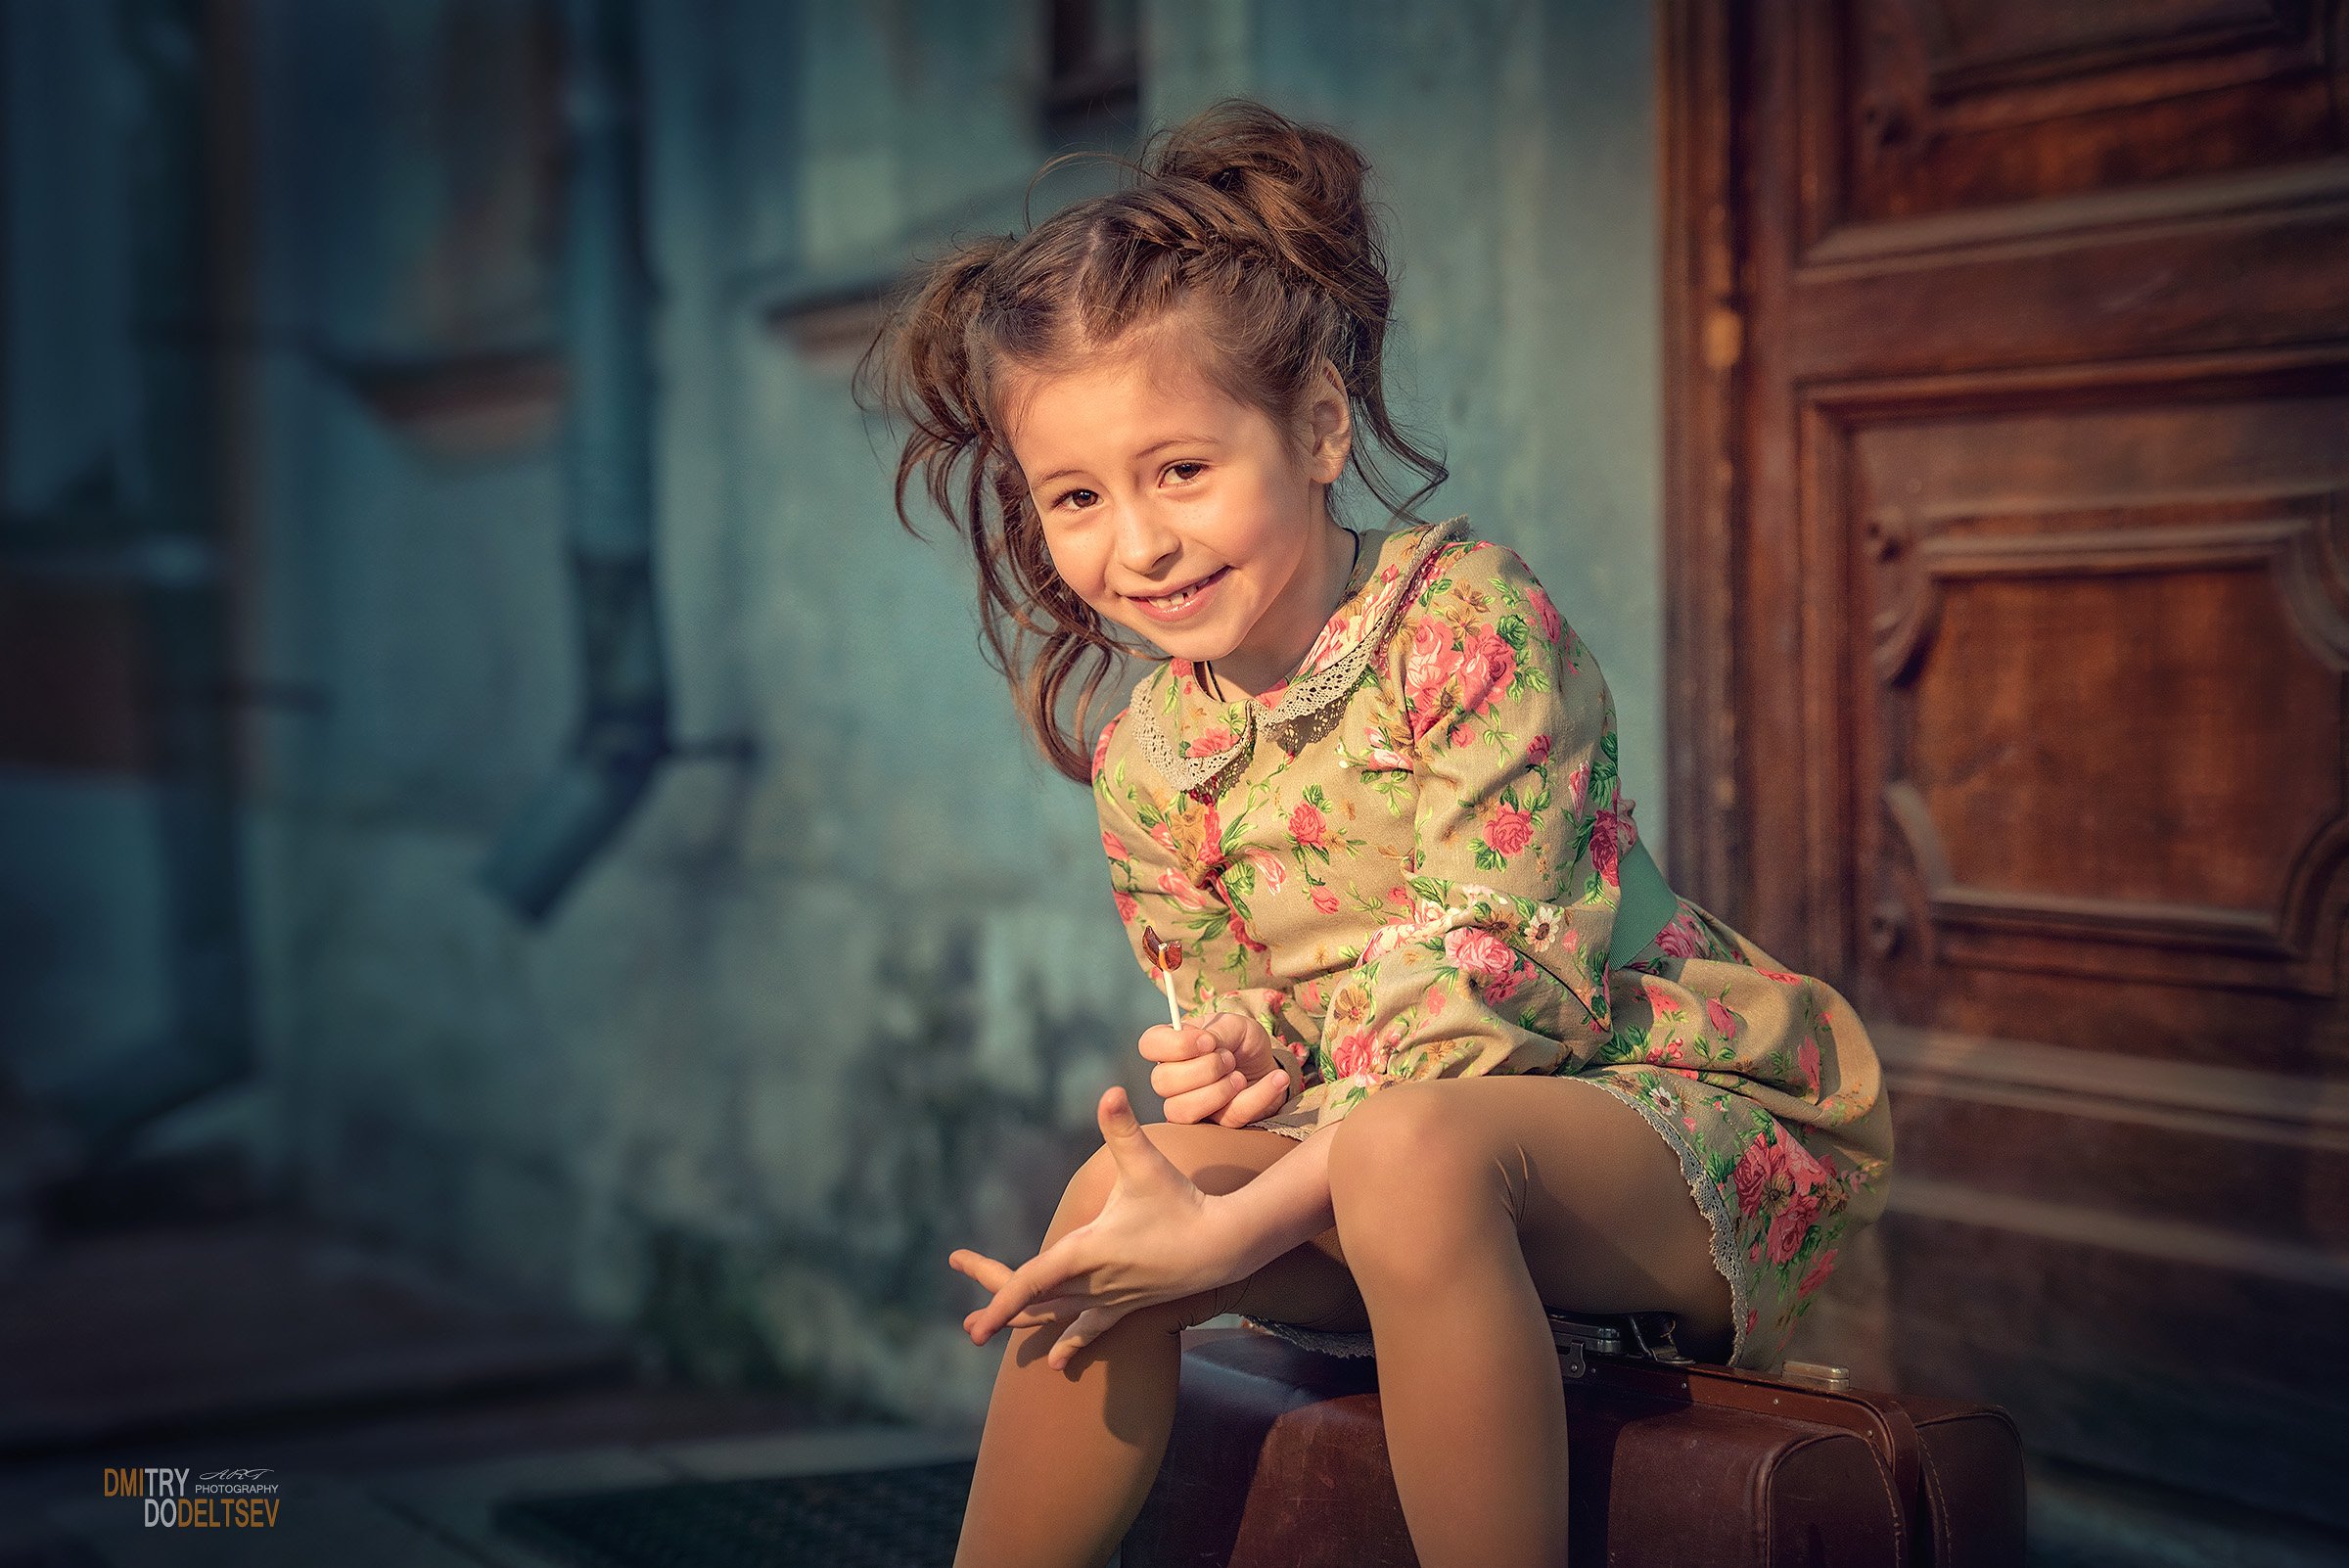 девочка, портрет, дети, чемодан, дверь, ретро, Дмитрий Додельцев